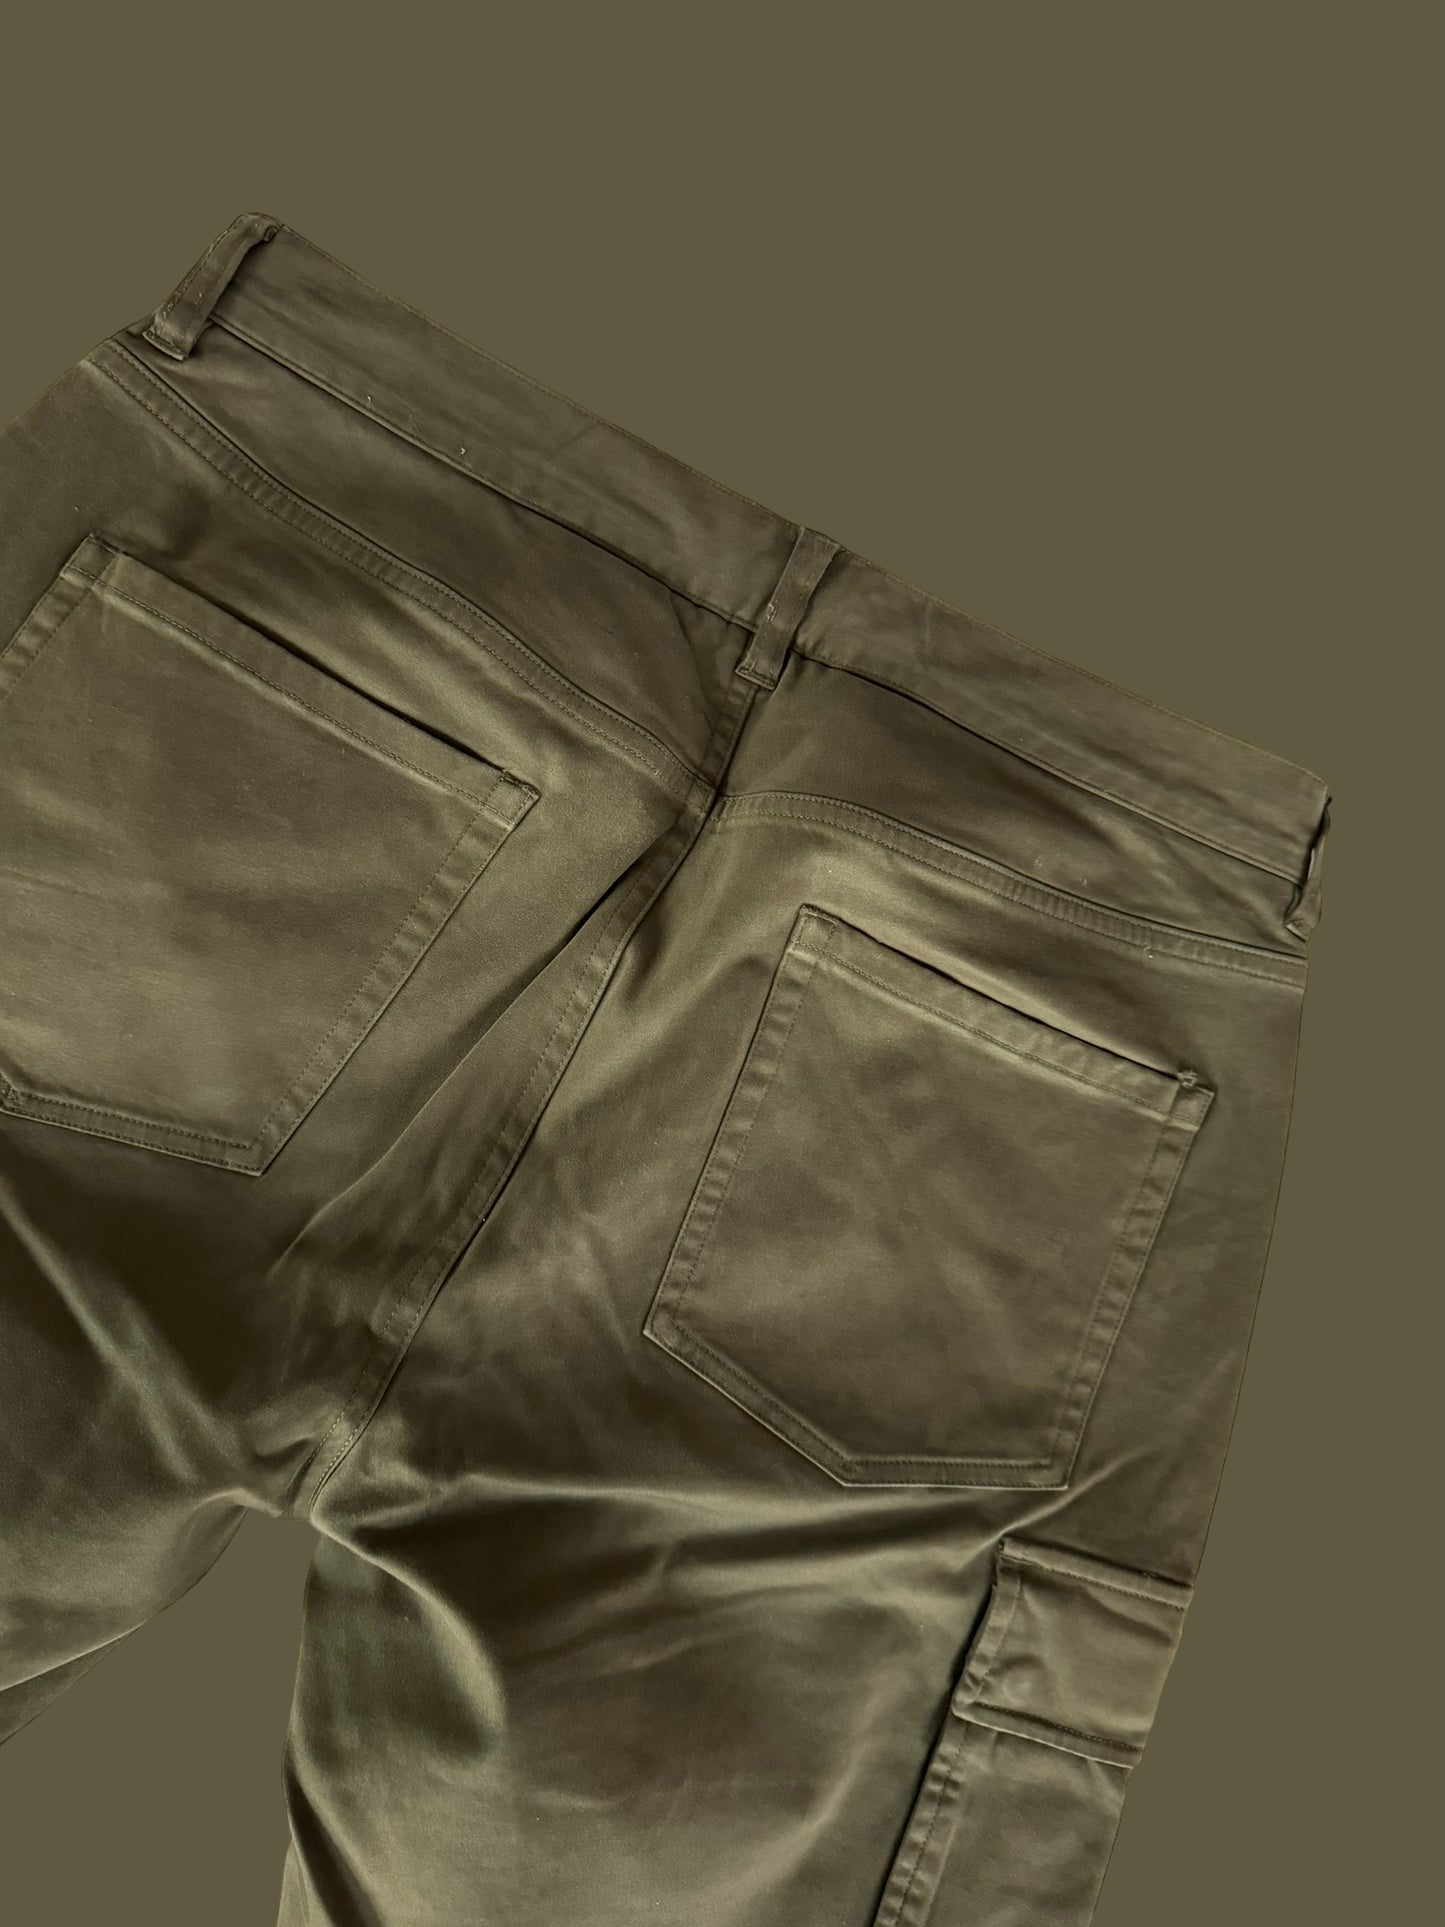 mens VINCE cargo pants size 31